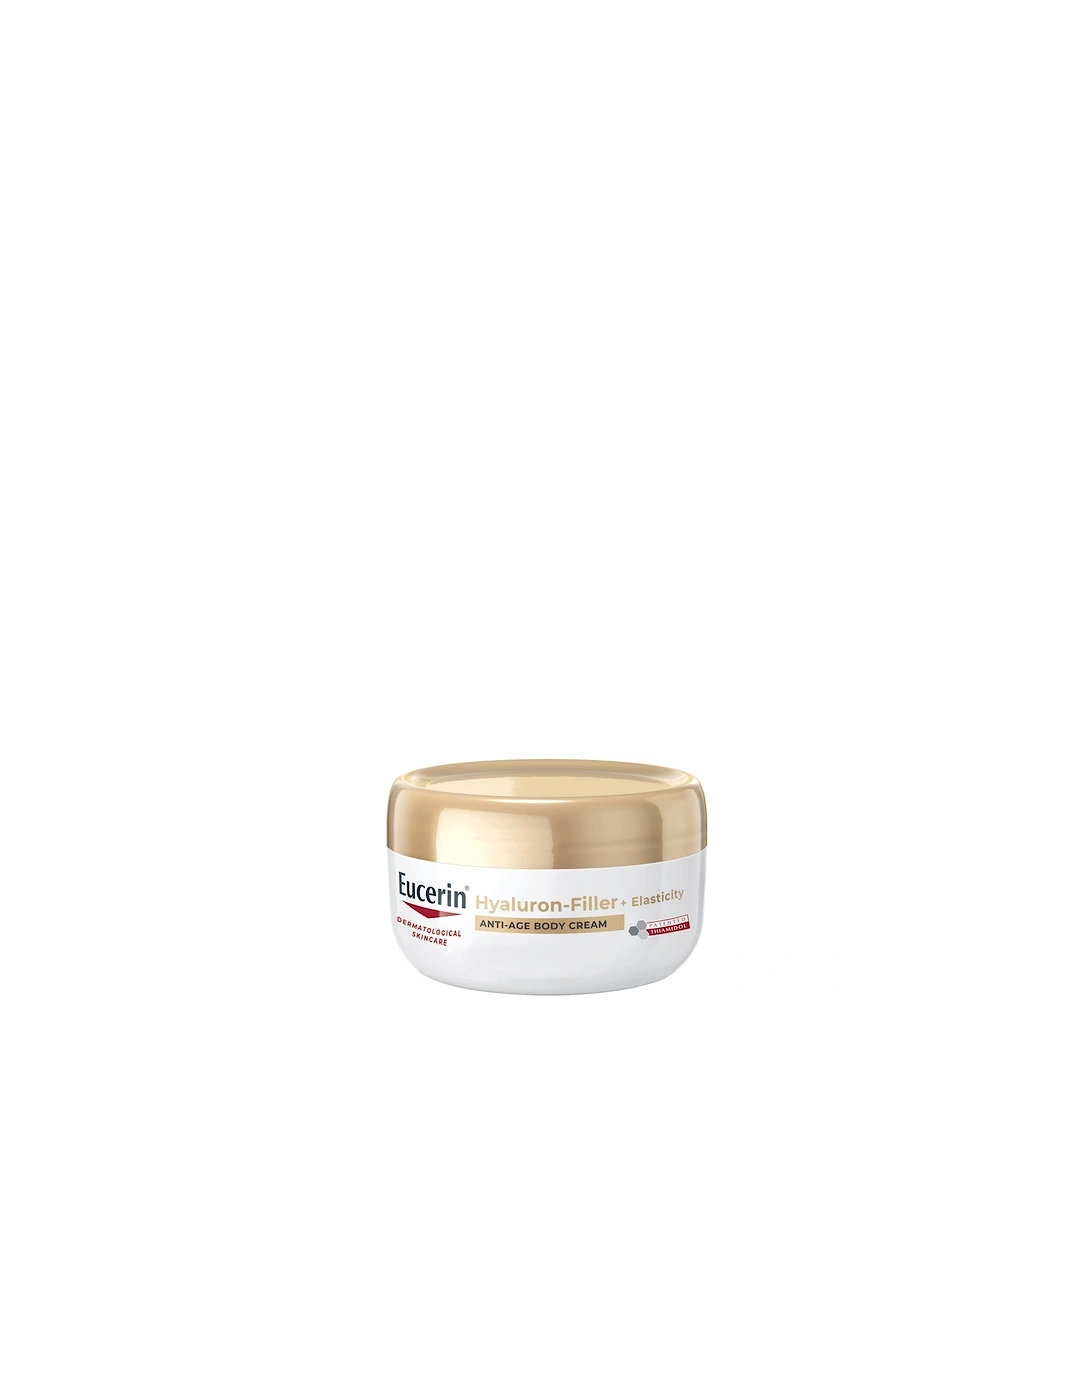 Hyaluron-Filler + Elasticity Body Cream 200ml, 2 of 1